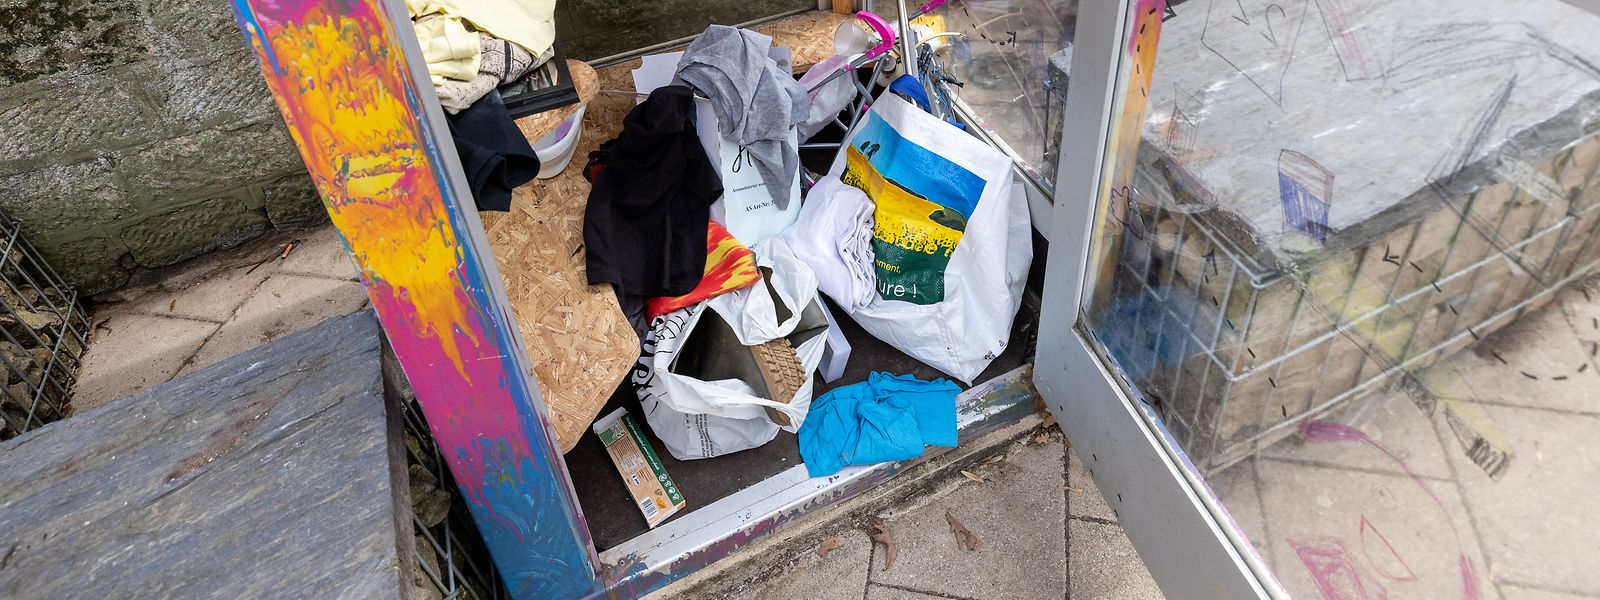 Mülldeponie, was Esch eigentlich als Tauschbörse aufstellte: Give-Boxen werden zu oft missbräuchlich verwendet.